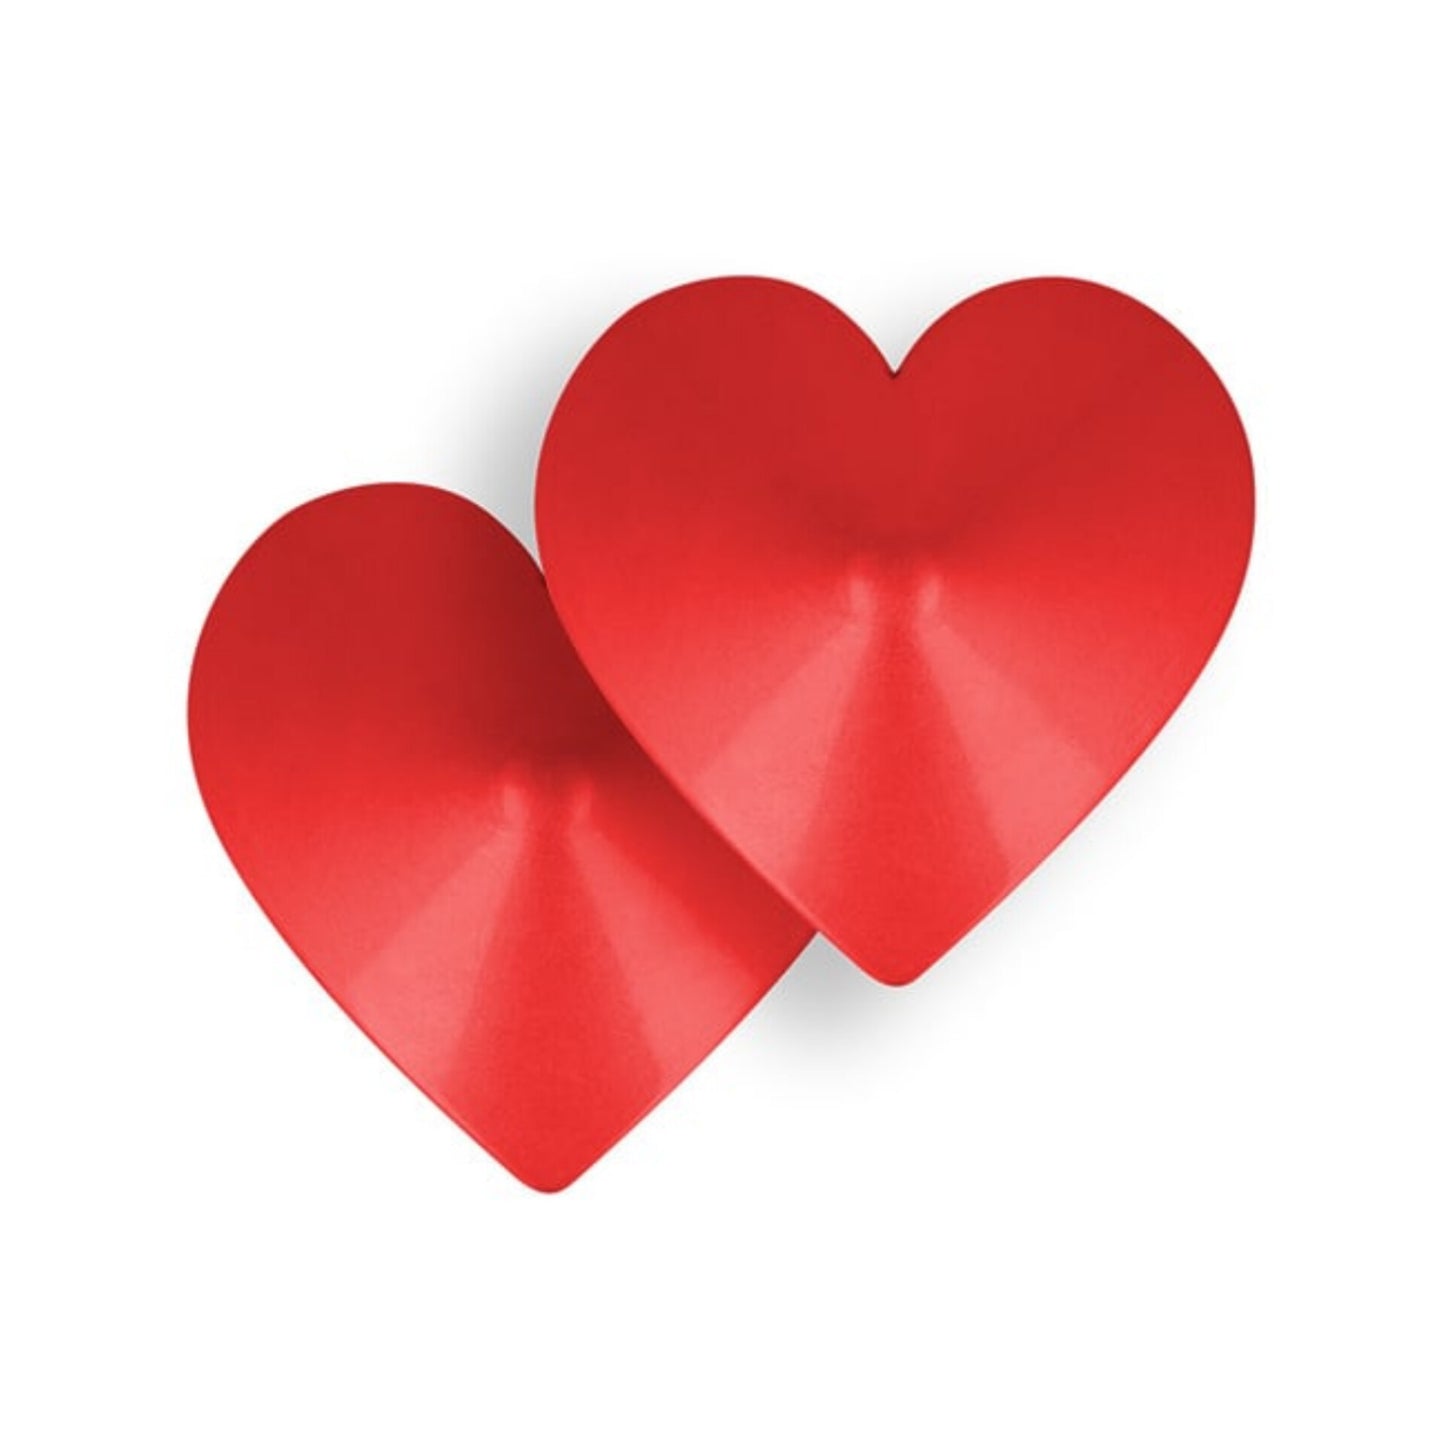 Ohmama - Rotes Herz - Brustwarzenabdeckungen